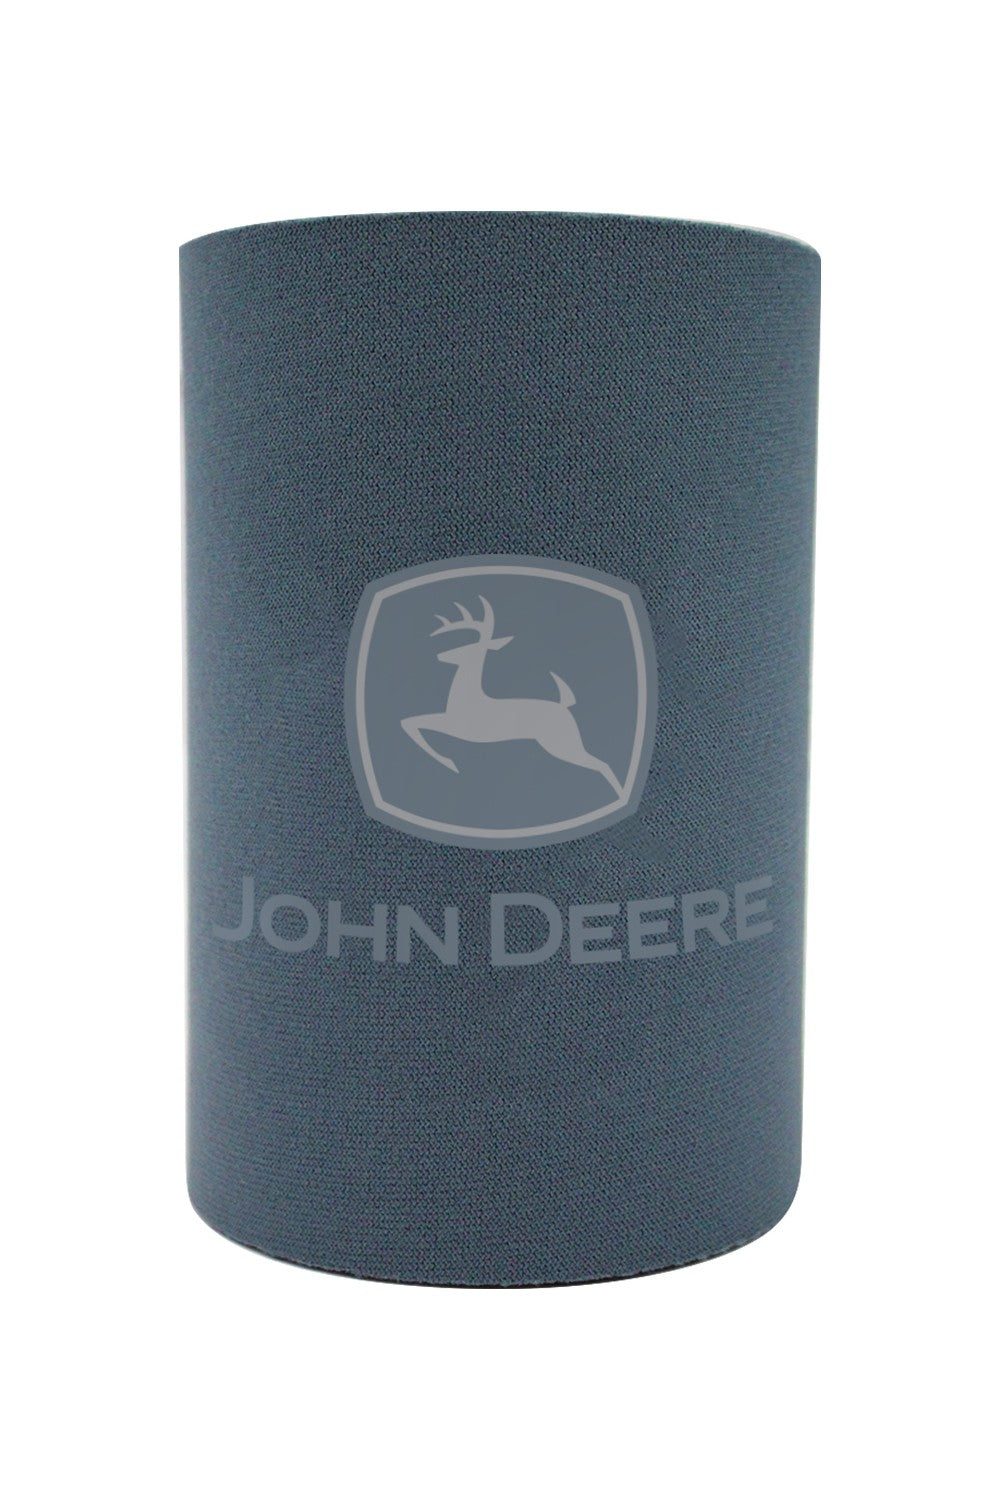 John Deere Logo Stubby Cooler